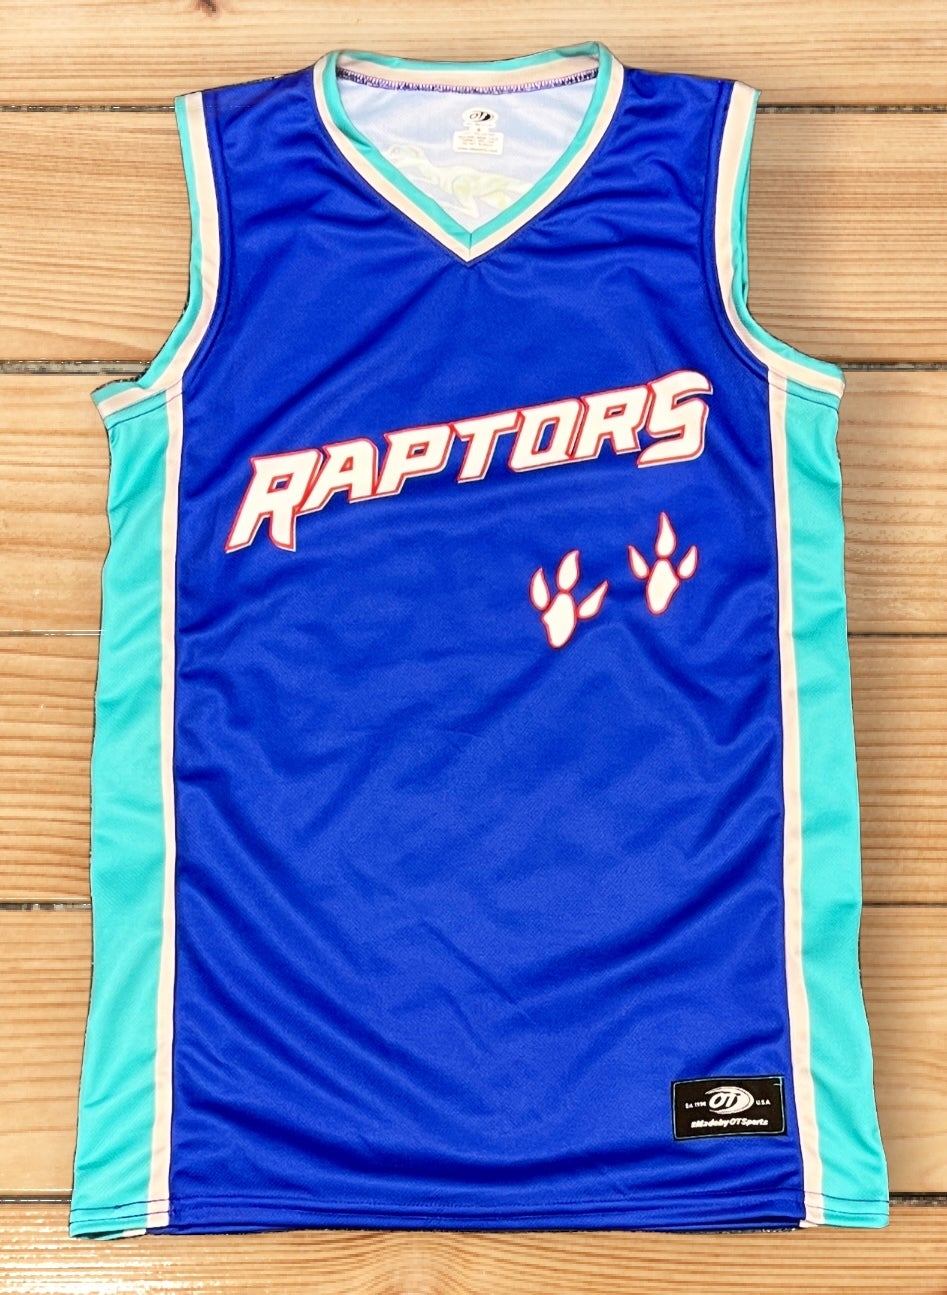 raptors blue jersey